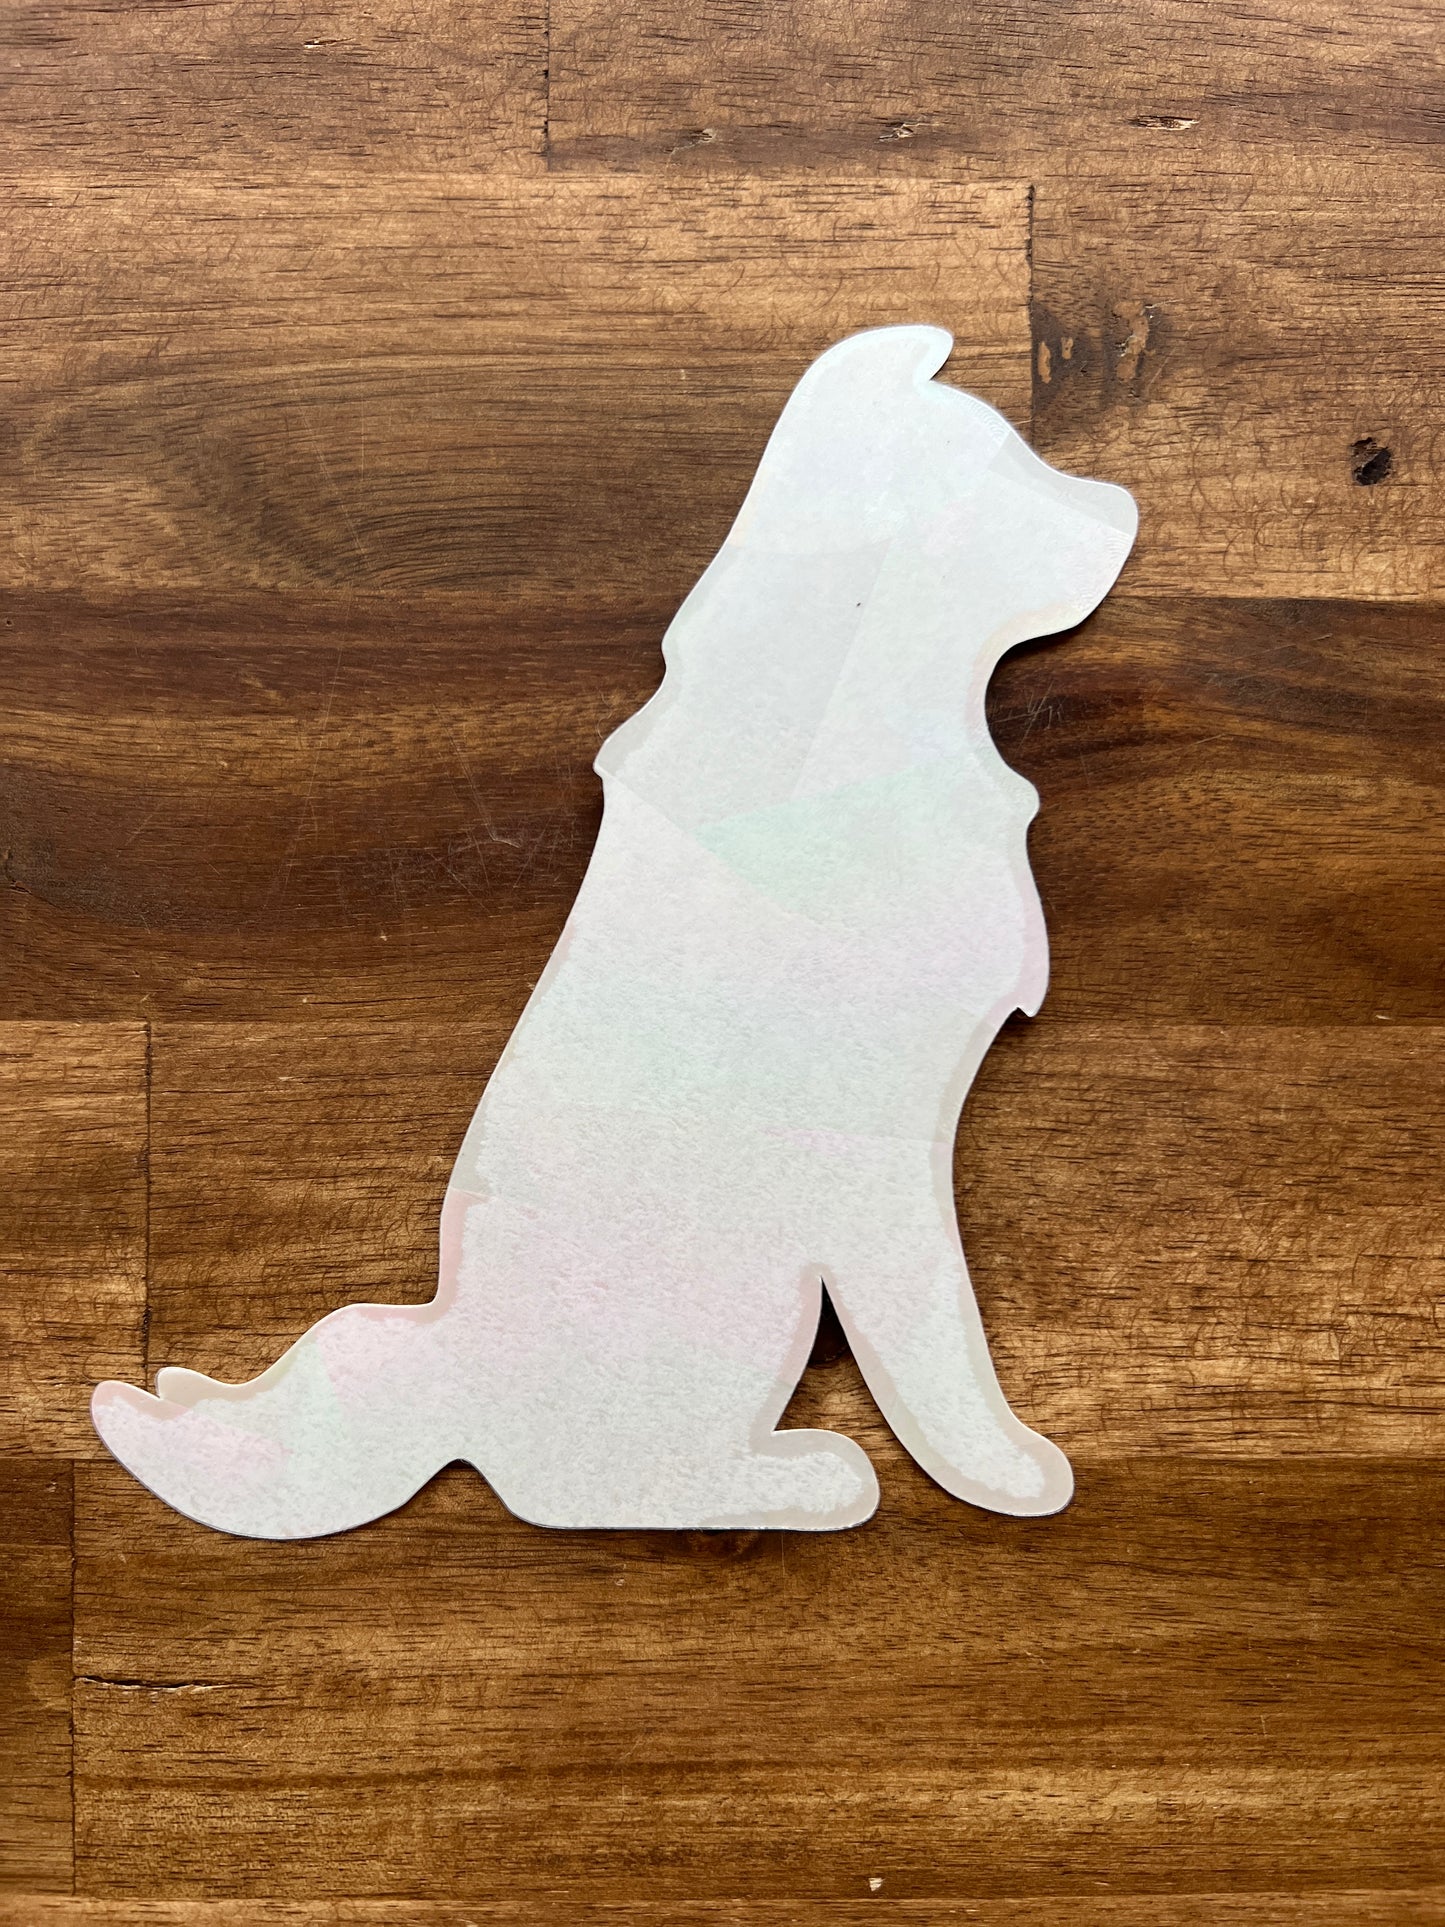 Window sticker Aussie, German Shepherd, Border Collie with prismatic effect